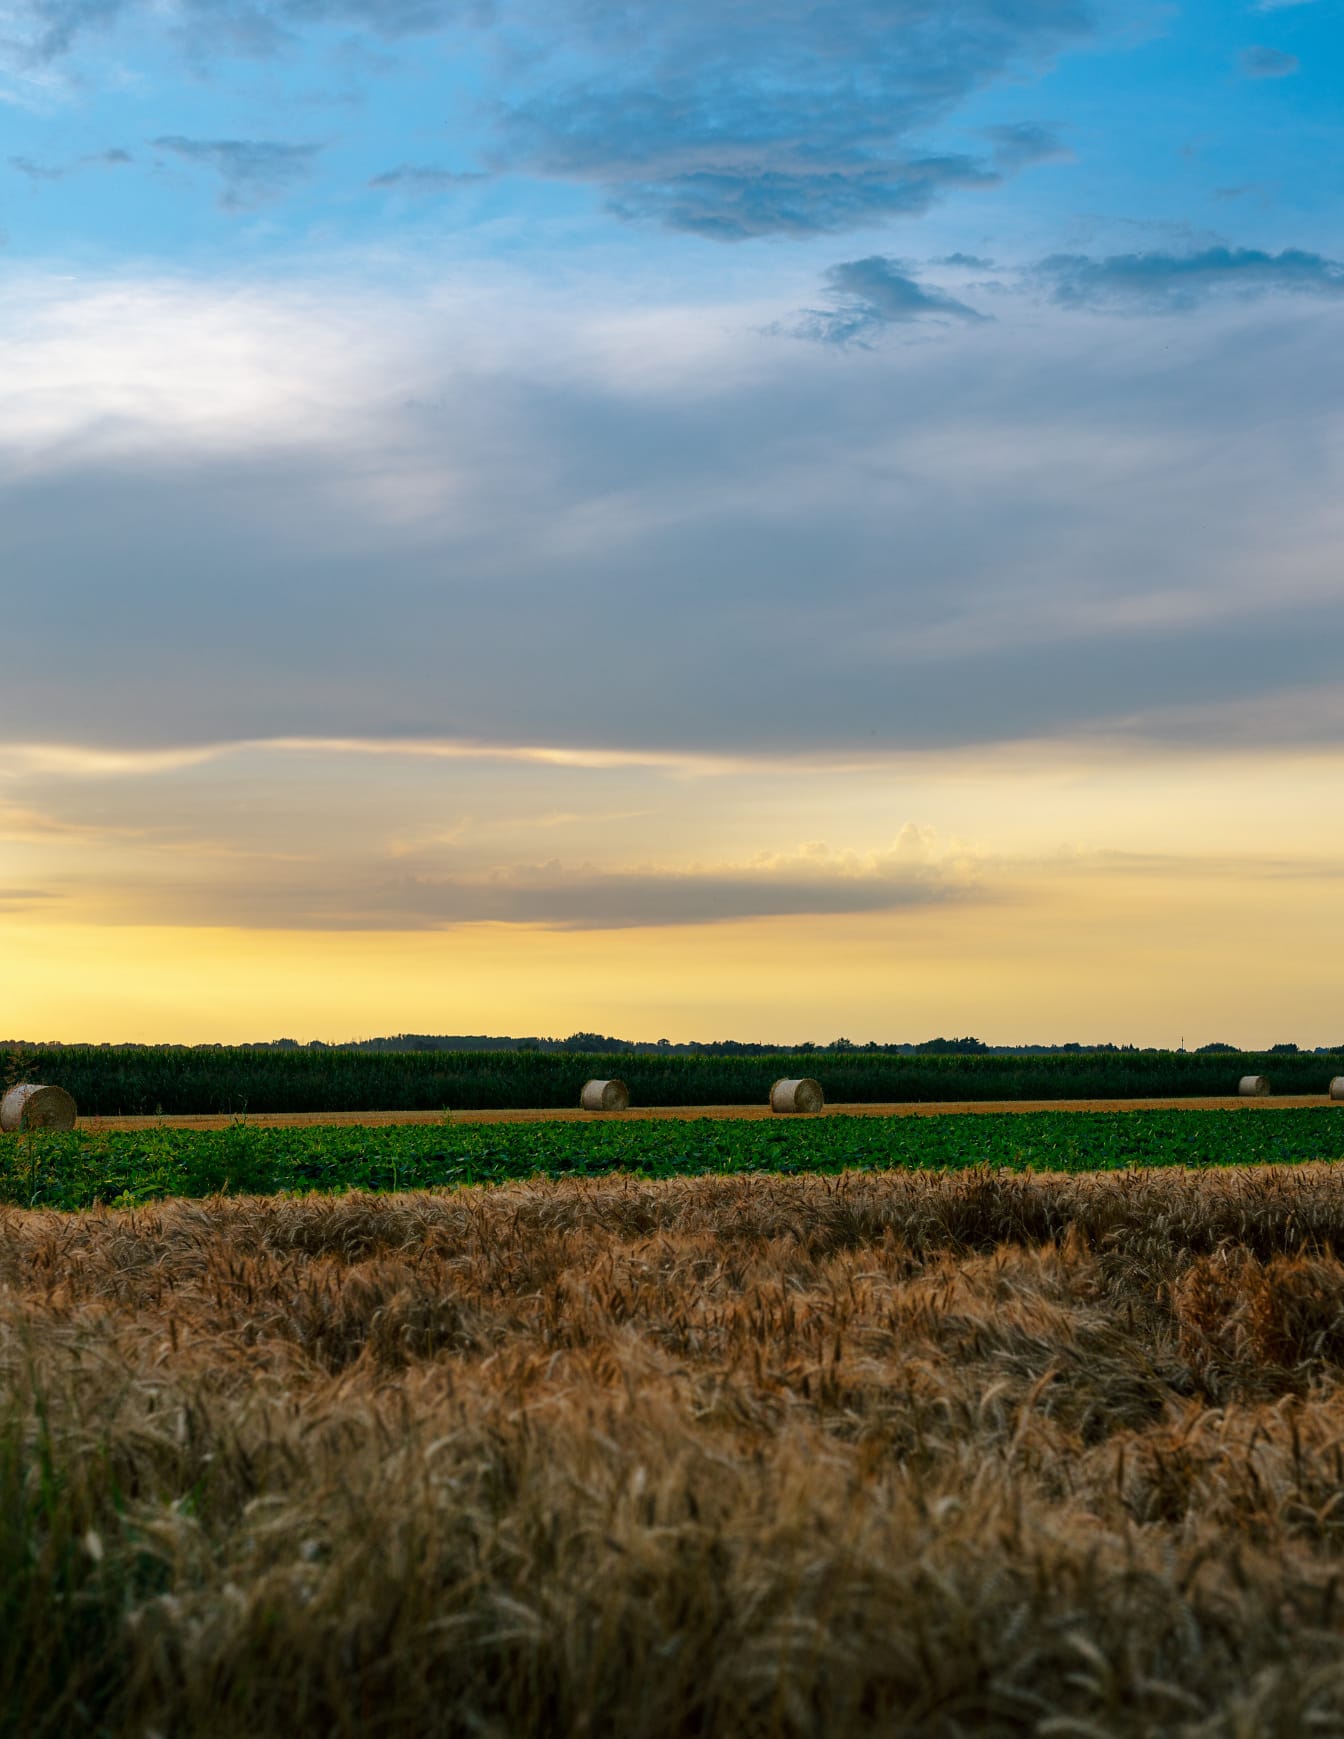 Ladang jelai dan ladang datar kedelai dengan ladang jagung di latar belakang